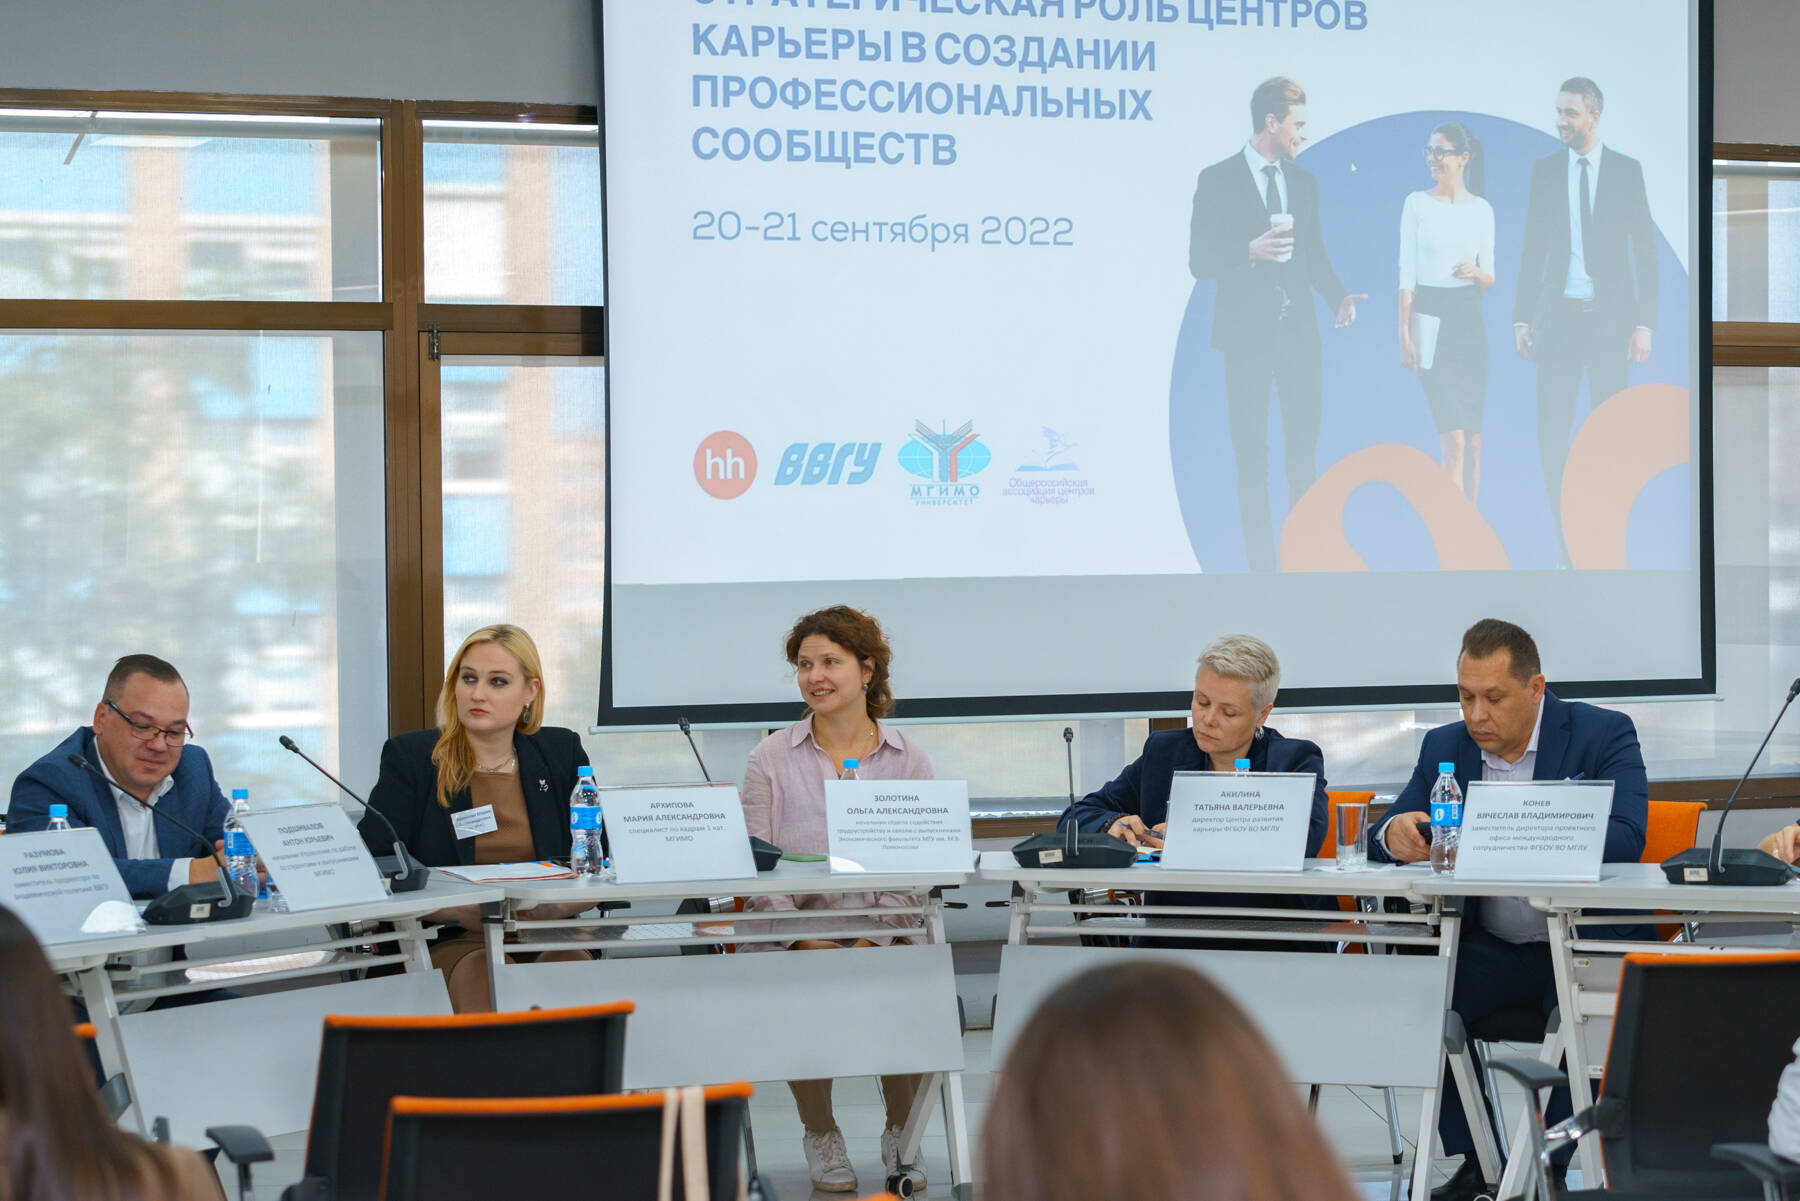 Стратегическую роль центров карьеры  в создании профессиональных сообществ обсудили на конференции Владивостокского государственного университета